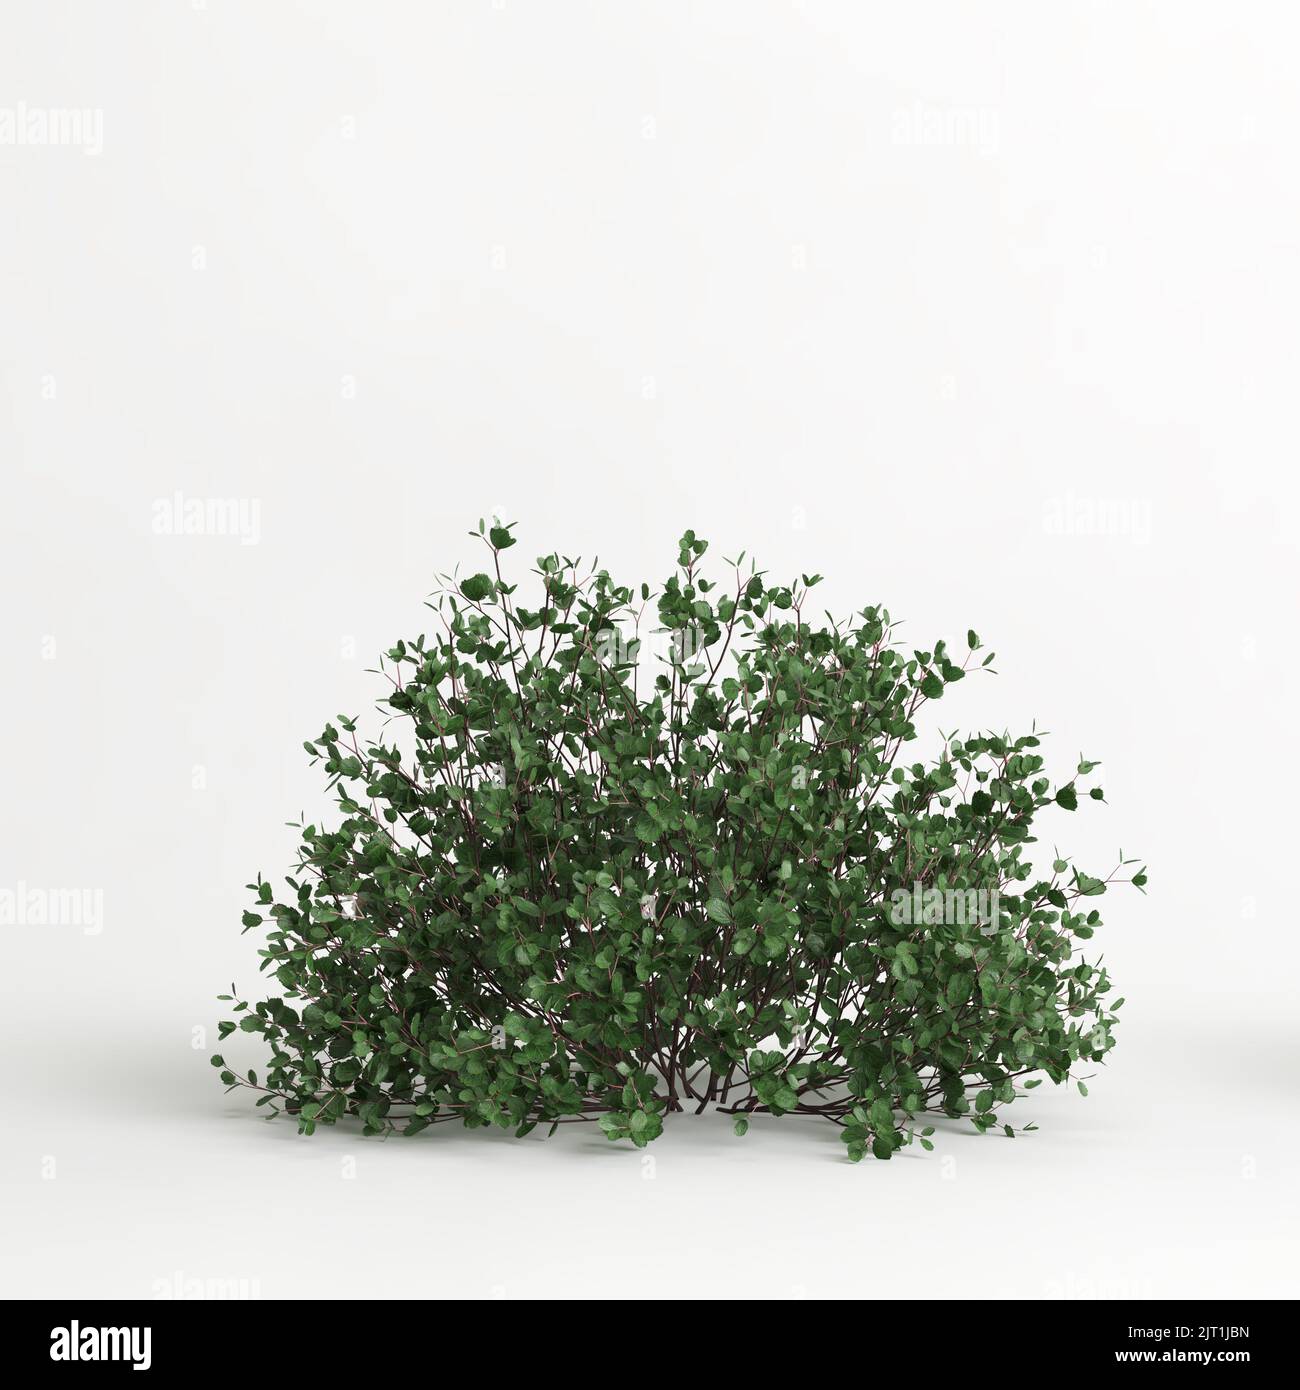 3d illustration of betula pumila tree isolated on white background Stock Photo